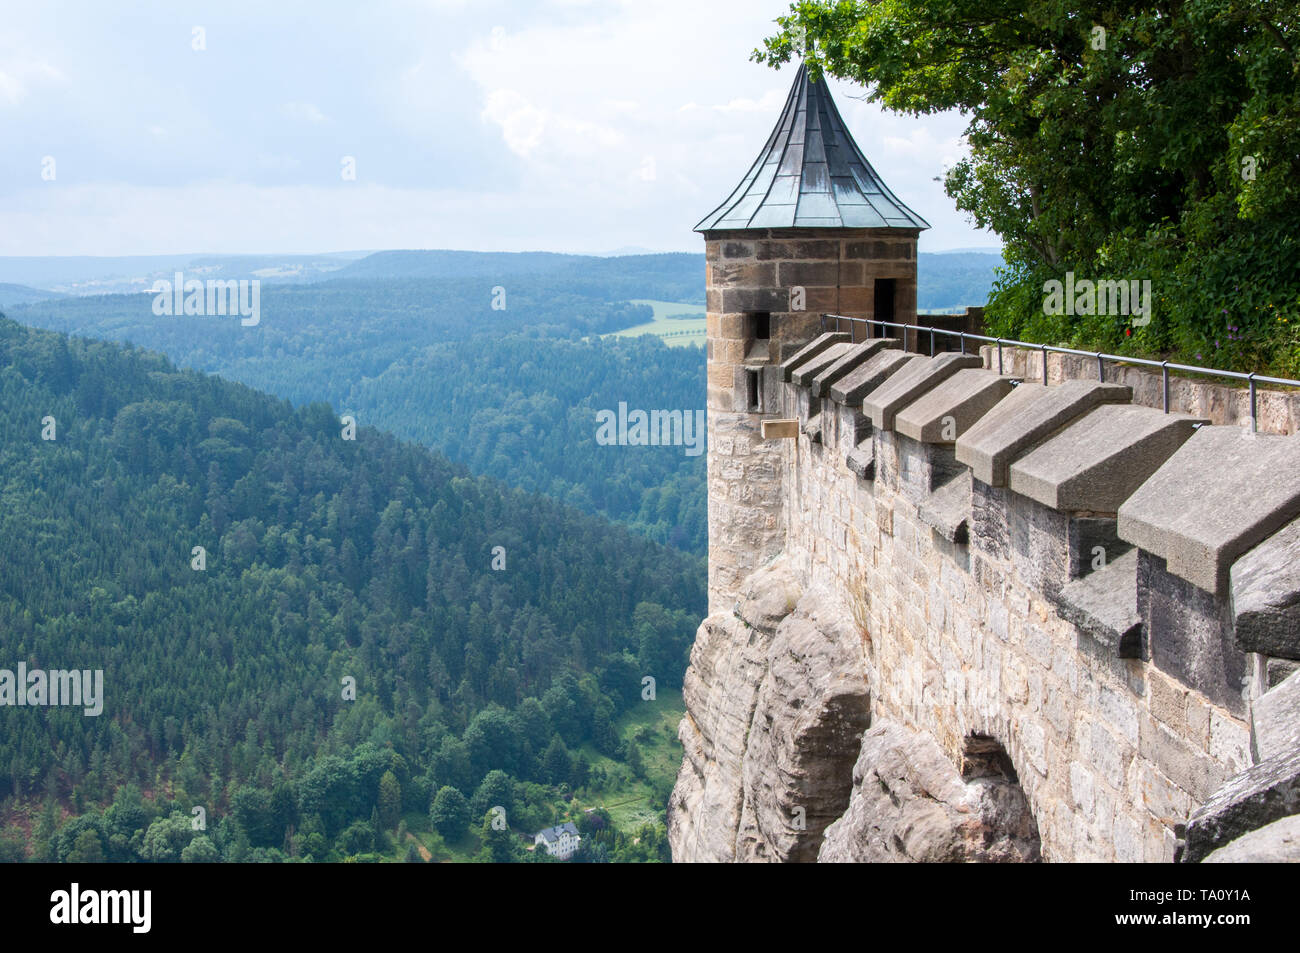 La parete di fortezza e la torre di un antico fortilizio medievale su una scogliera al di sopra della pianura. Foto Stock